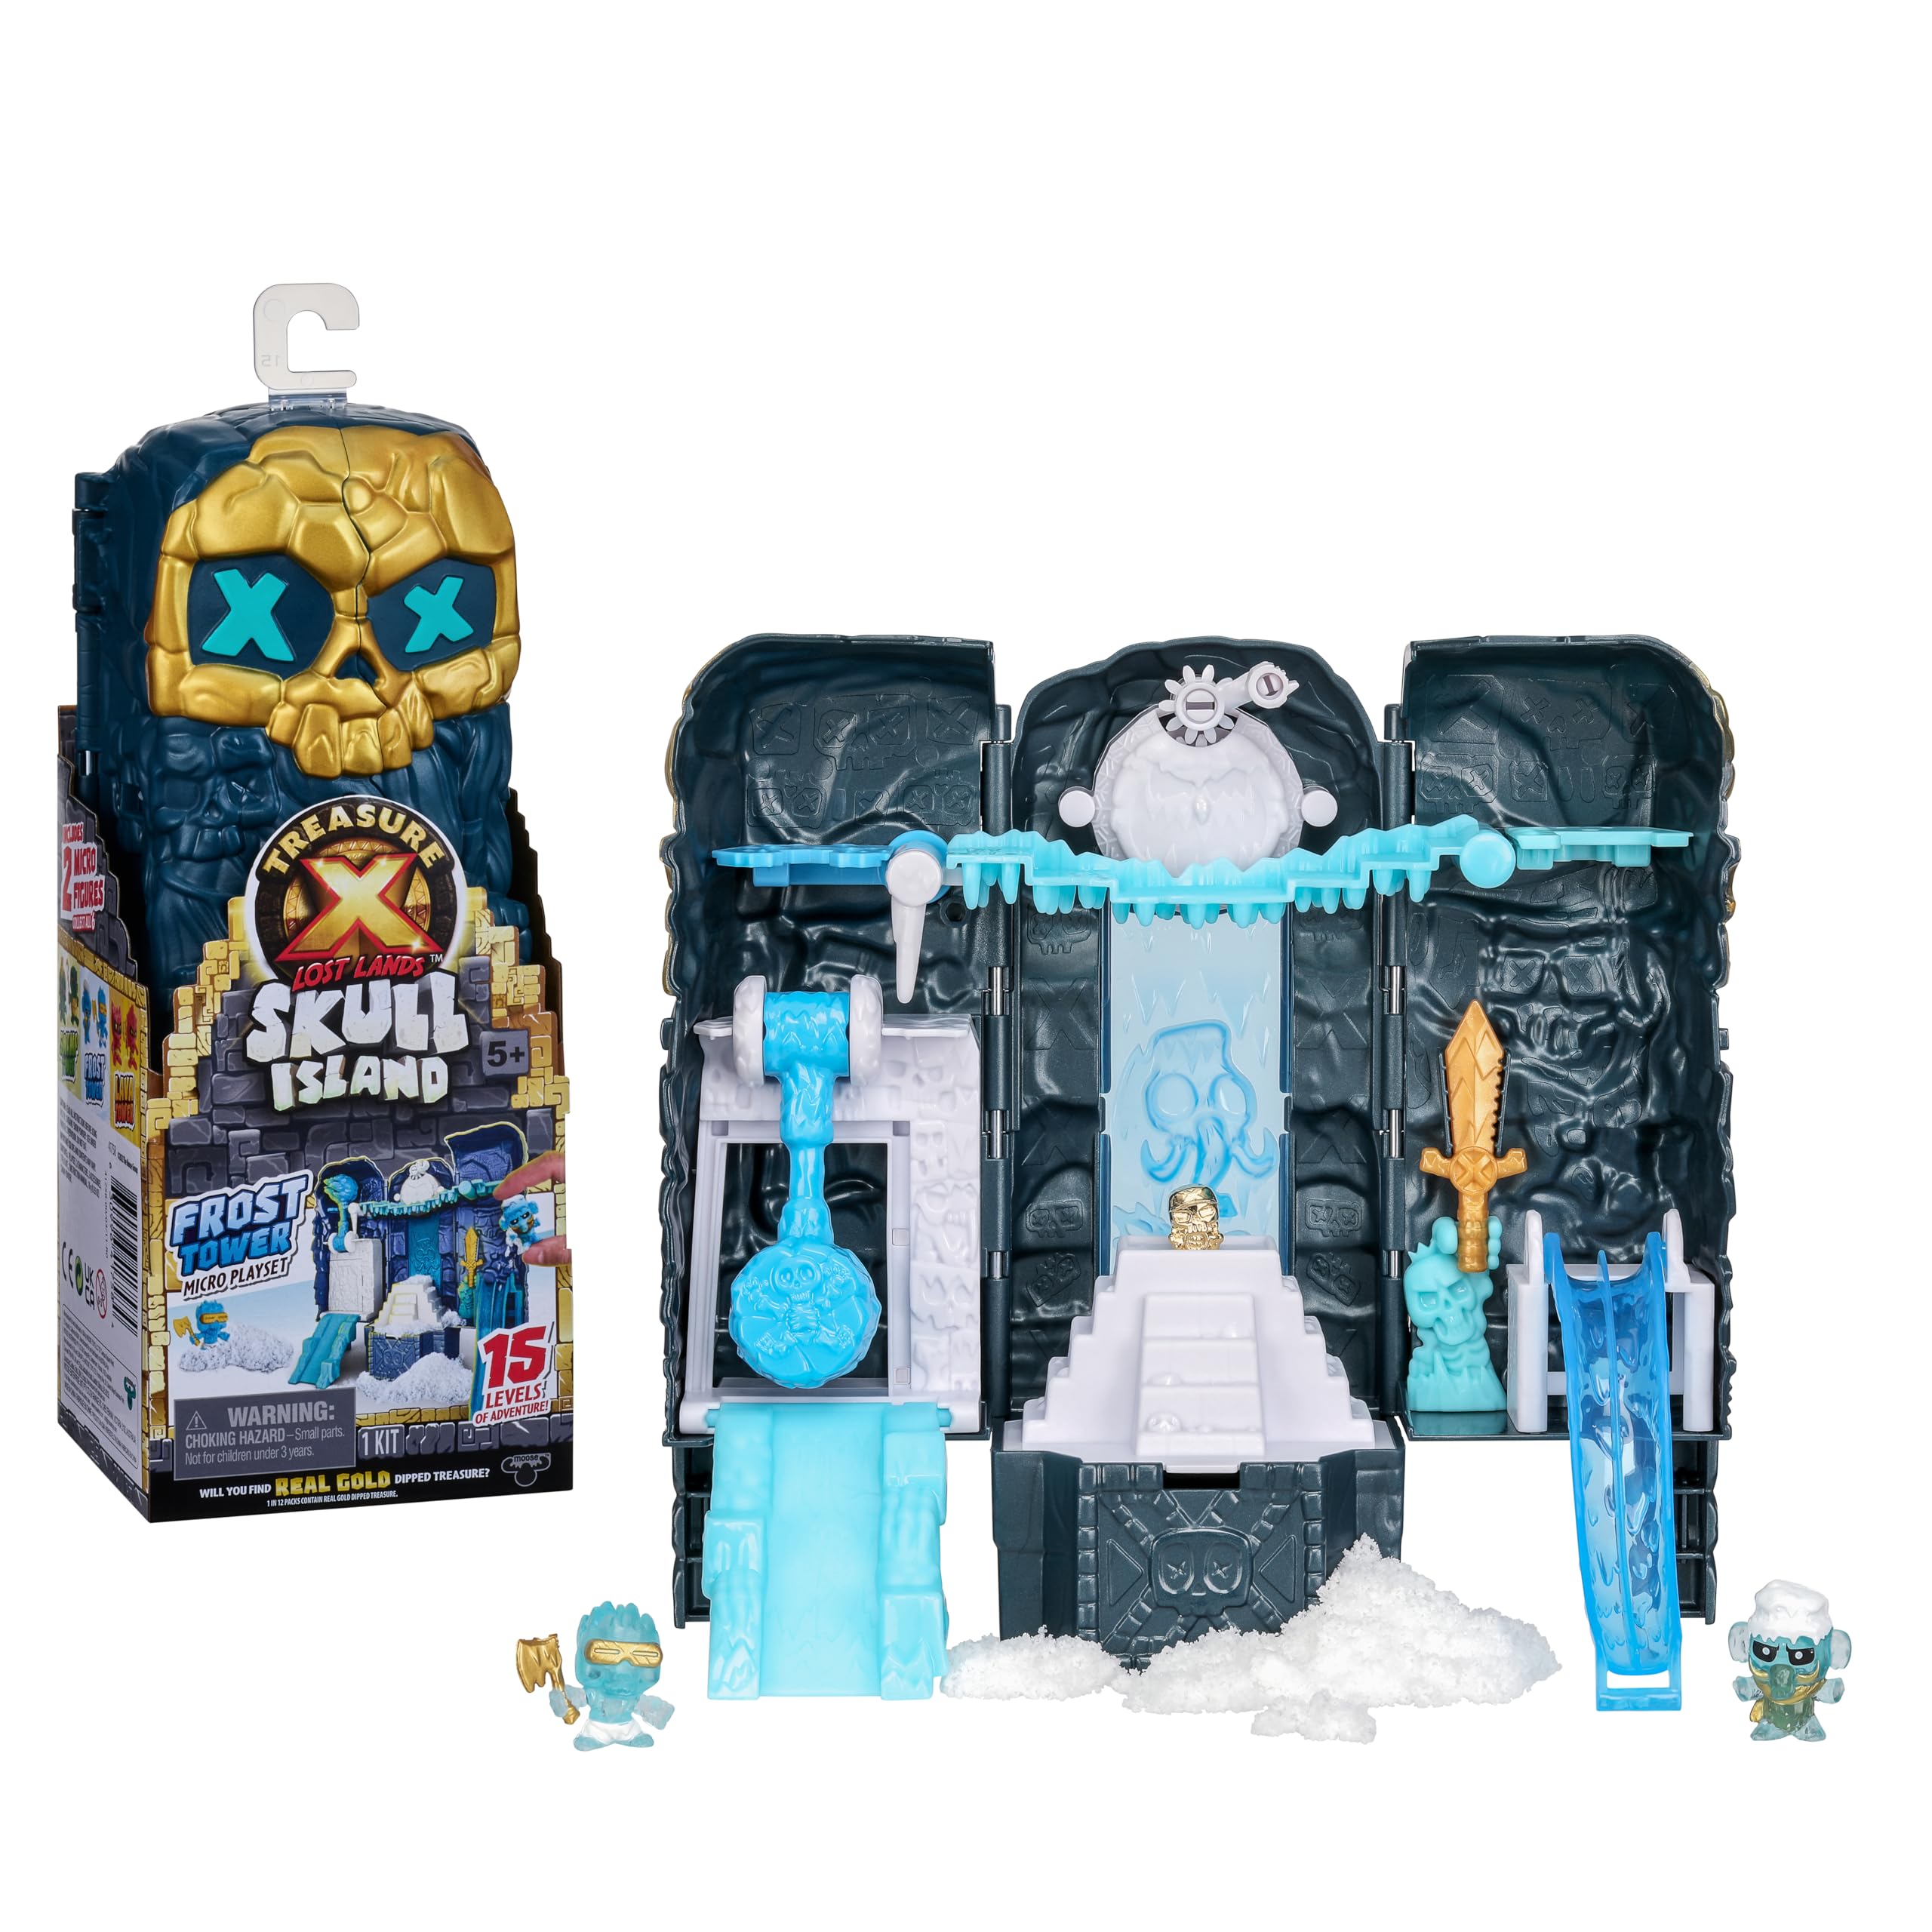 Outlet Shop  Mini set de jeu Tour de glace Treasure X Lost Lands Skull Island, 15 niveaux d’aventure. Déjoue les pièges et découvre 2 figurines miniatures. Trouveras-tu un trésor en or véritable ? LfZfHL8Jt frais